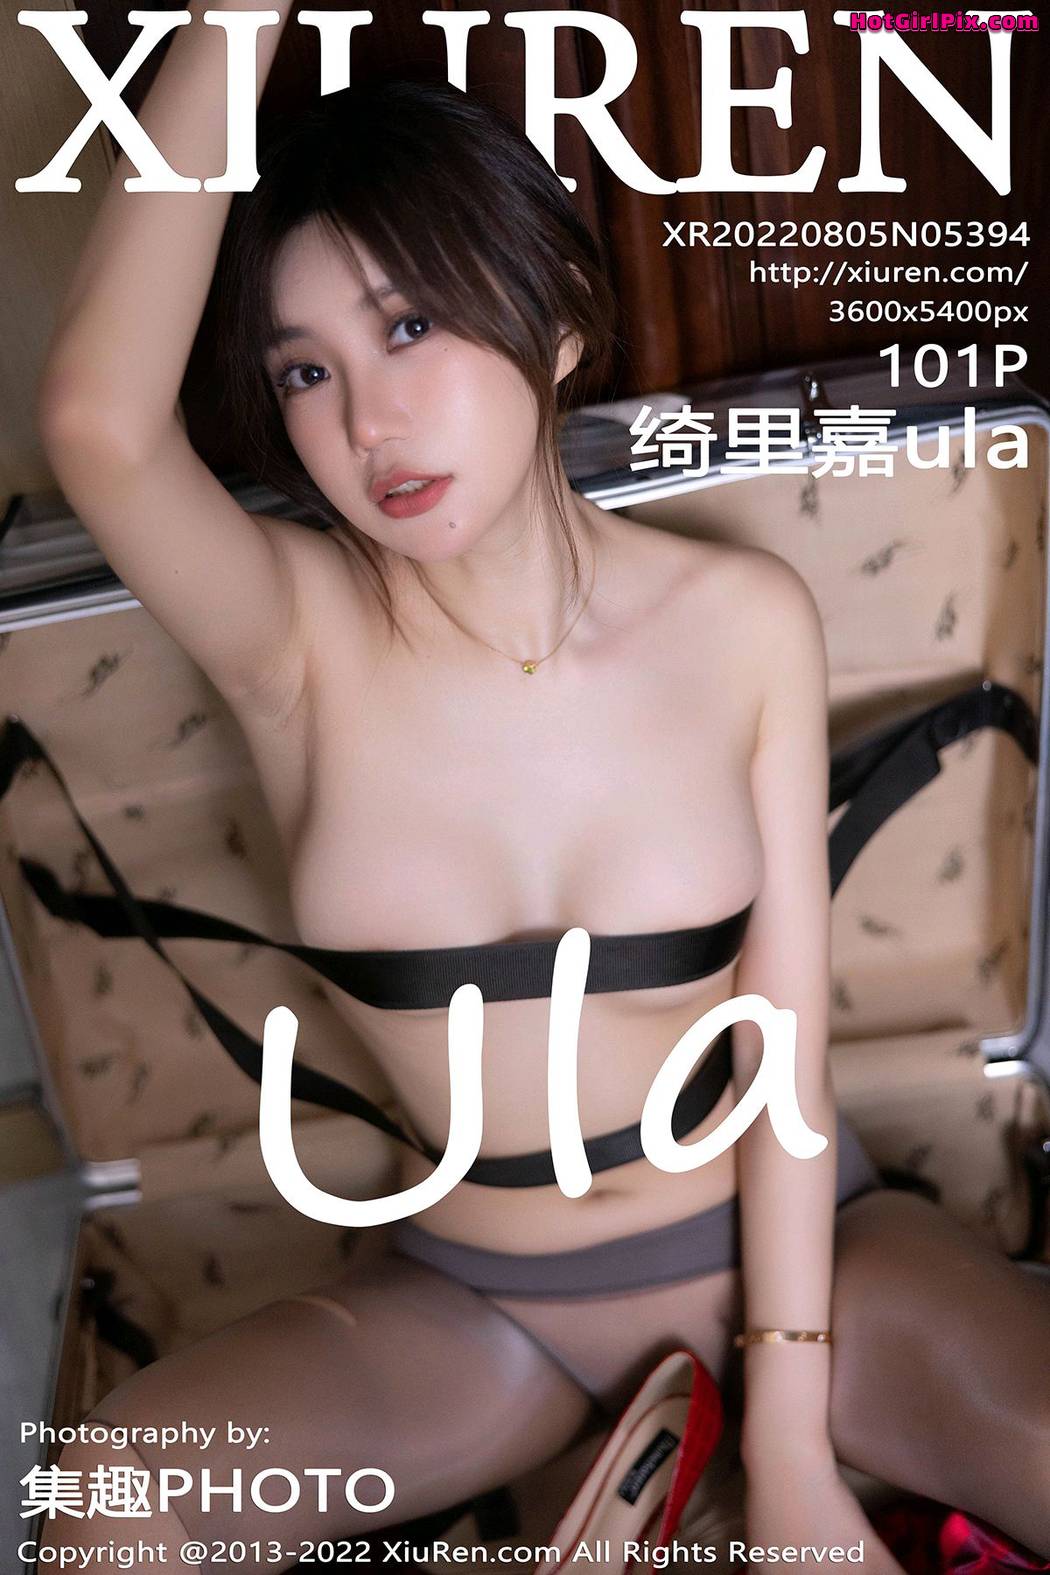 [XIUREN] No.5394 Qi Li Jia 绮里嘉ula Cover Photo